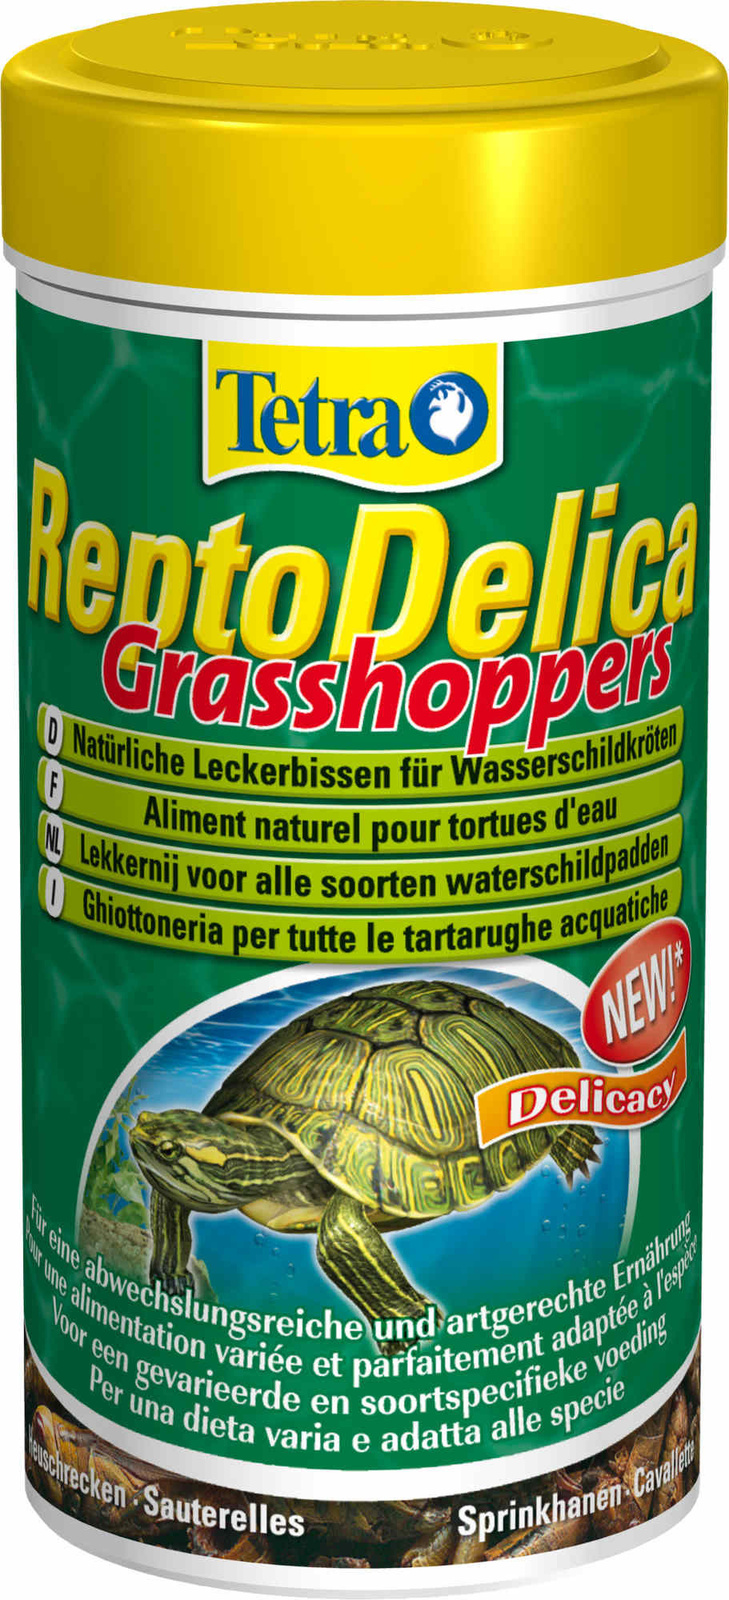 корм для черепах tetra reptodelica grasshopers лакомство для водных черепах кузнечики 250мл Tetra (корма) Tetra (корма) натуральное лакомство для водных черепах: кузнечики (28 г)